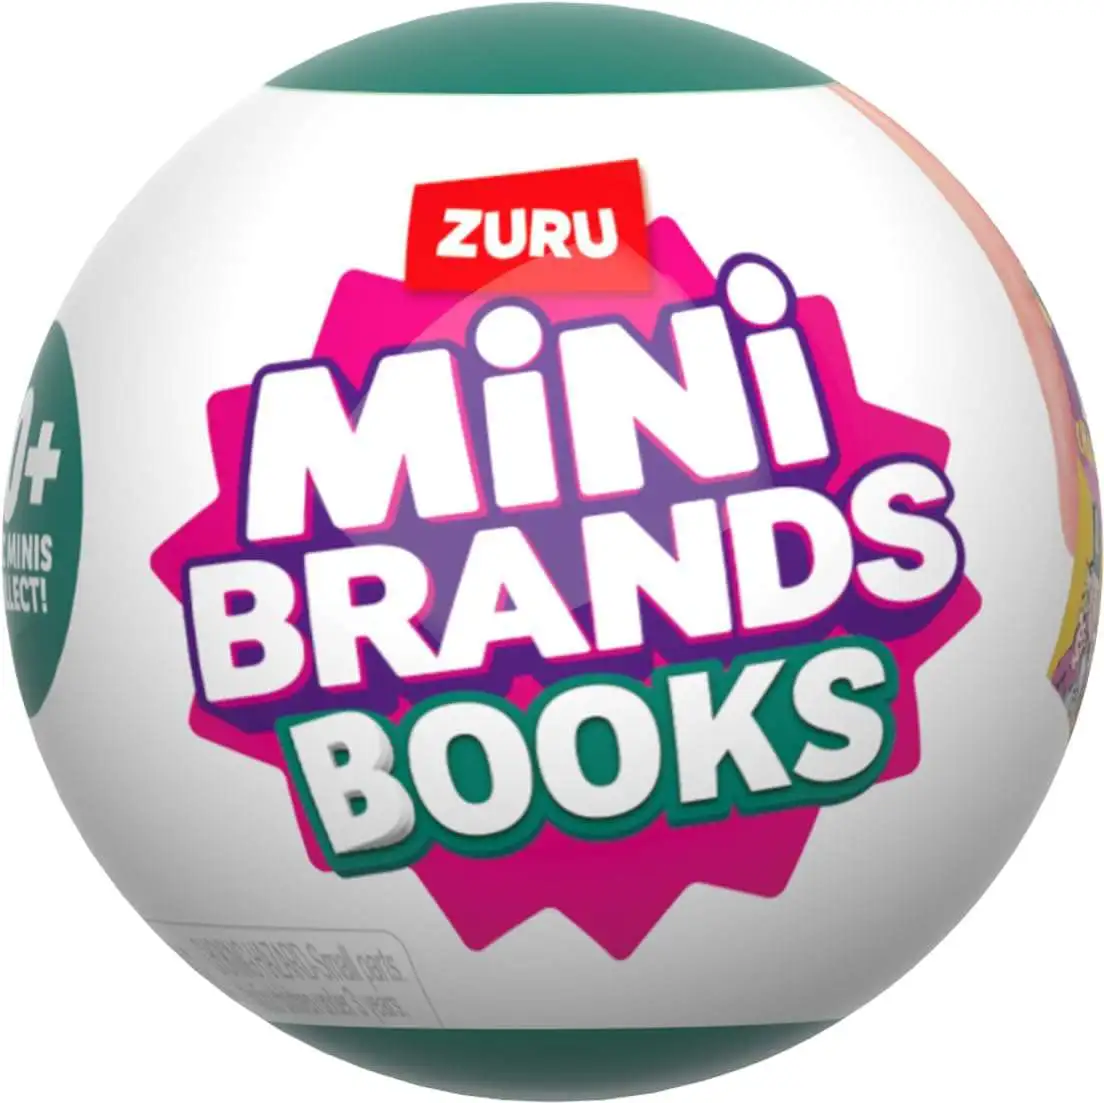 ZURU MINI BRANDS BOOKS *PICK WHAT YOU NEED* HOT HOT SPEND $20 GET